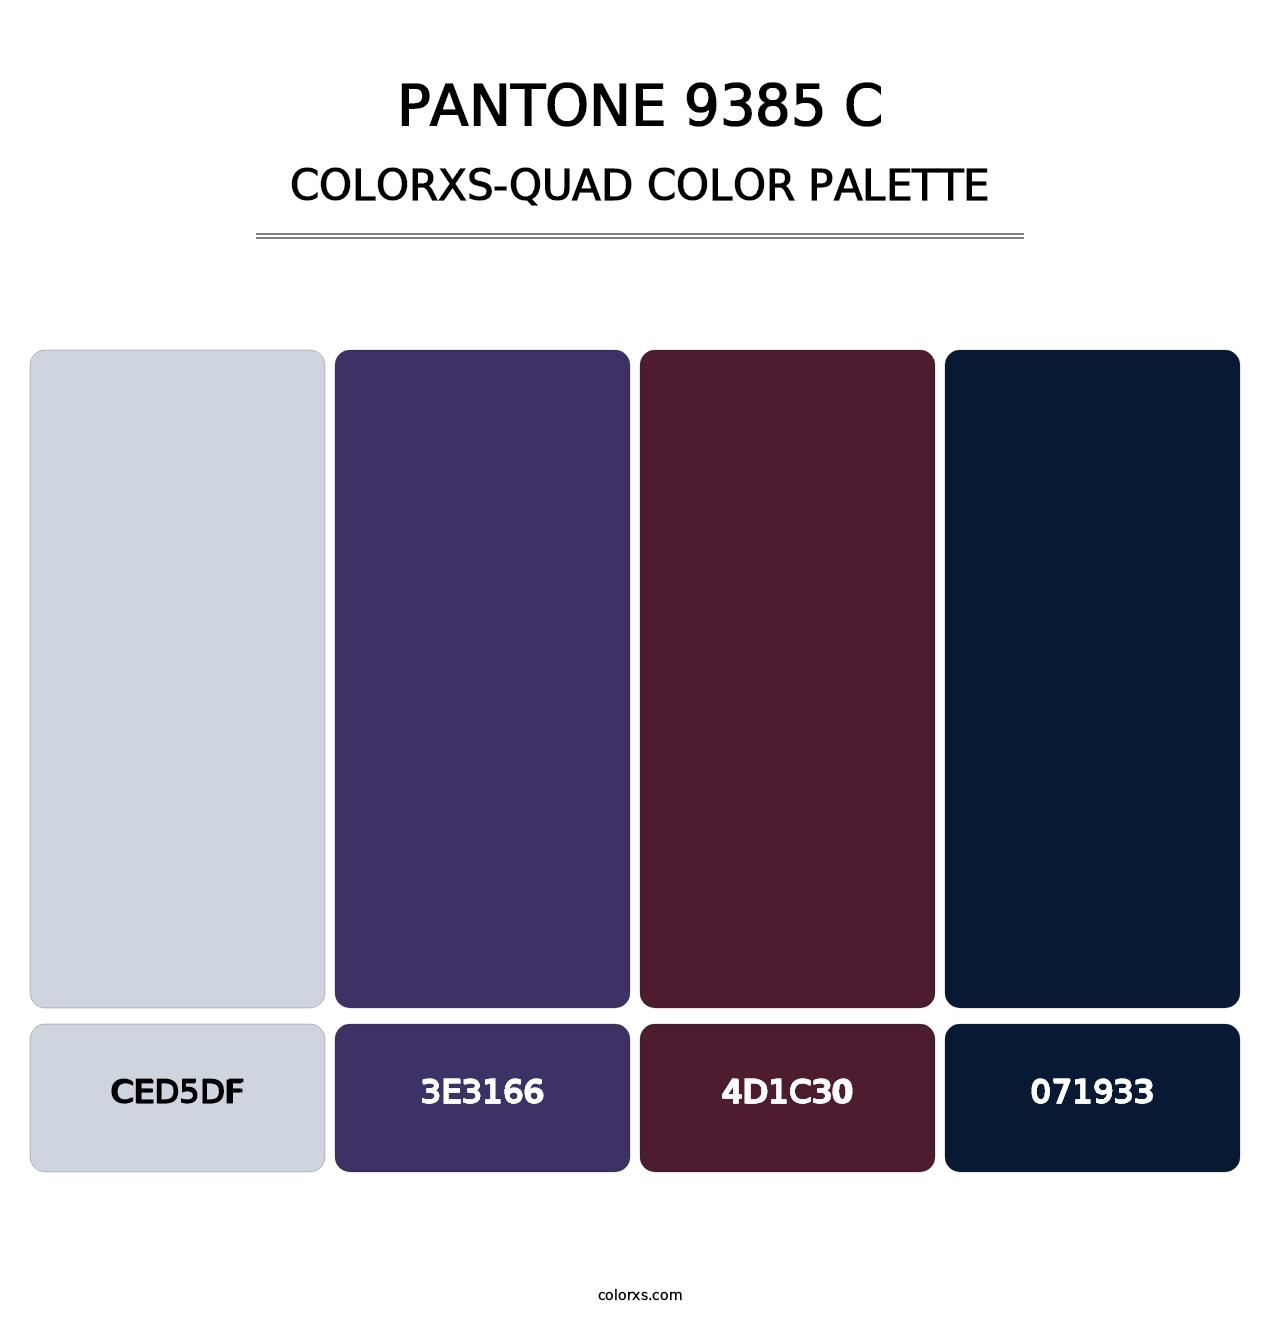 PANTONE 9385 C - Colorxs Quad Palette